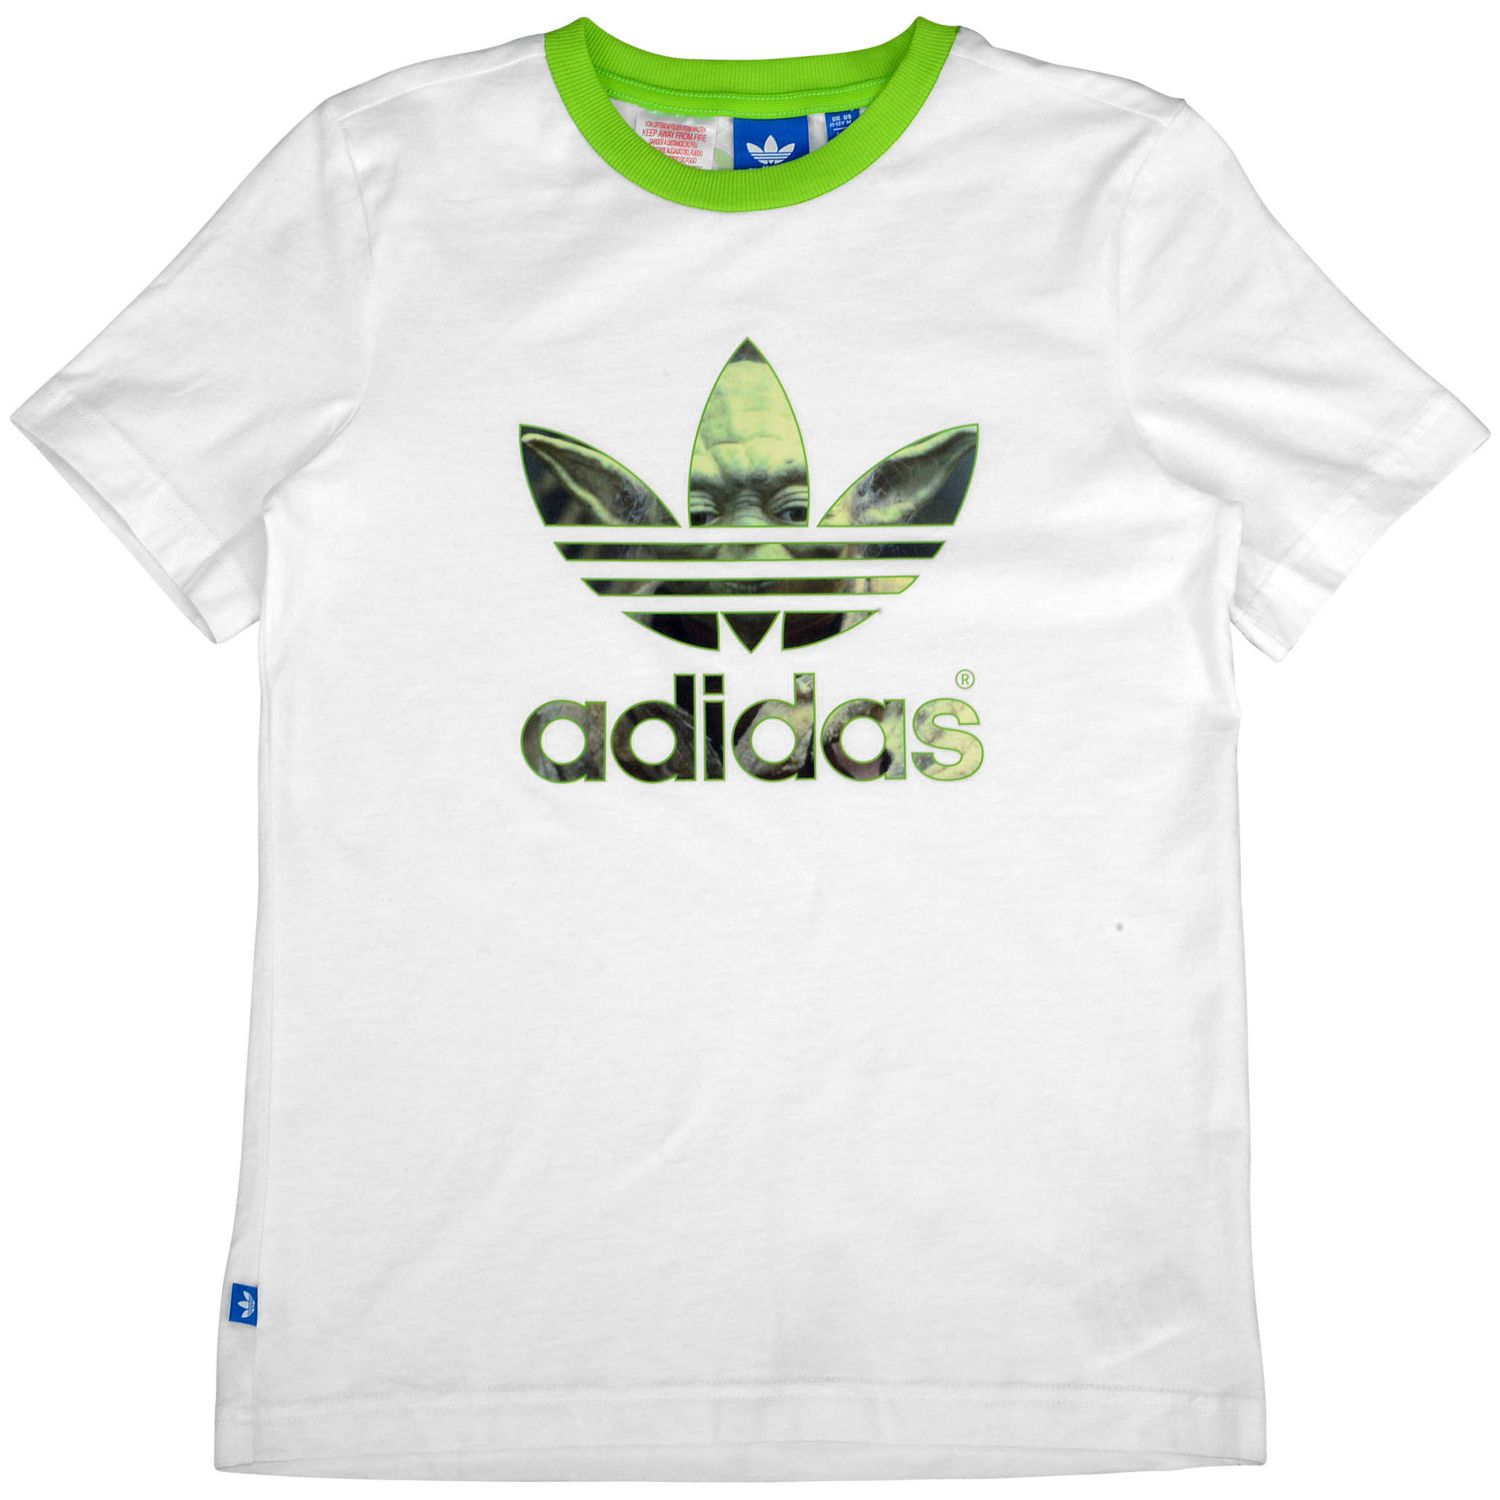 Plantación Mucama bahía Adidas Originals Camiseta Niño Star Wars Yoda (blanco/verde)